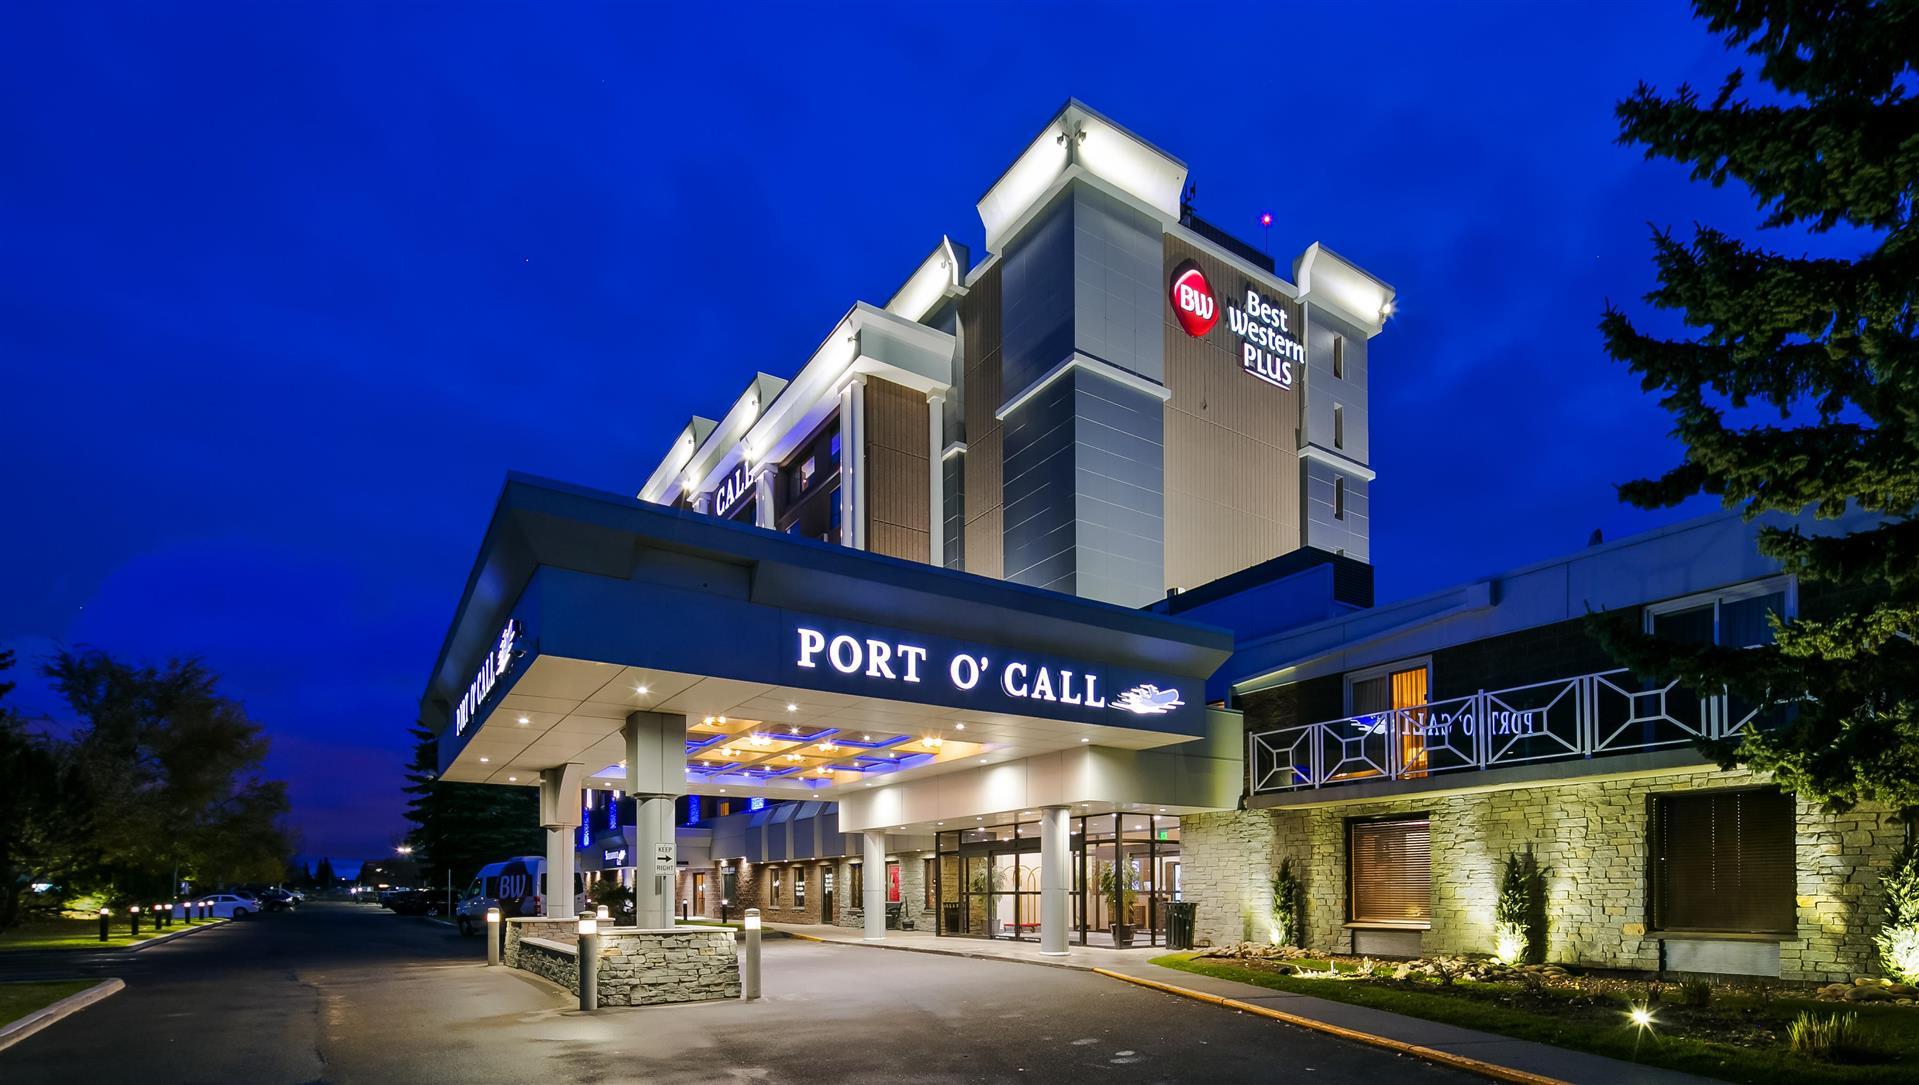 Best Western Plus Port O'Call Hotel in Calgary, AB